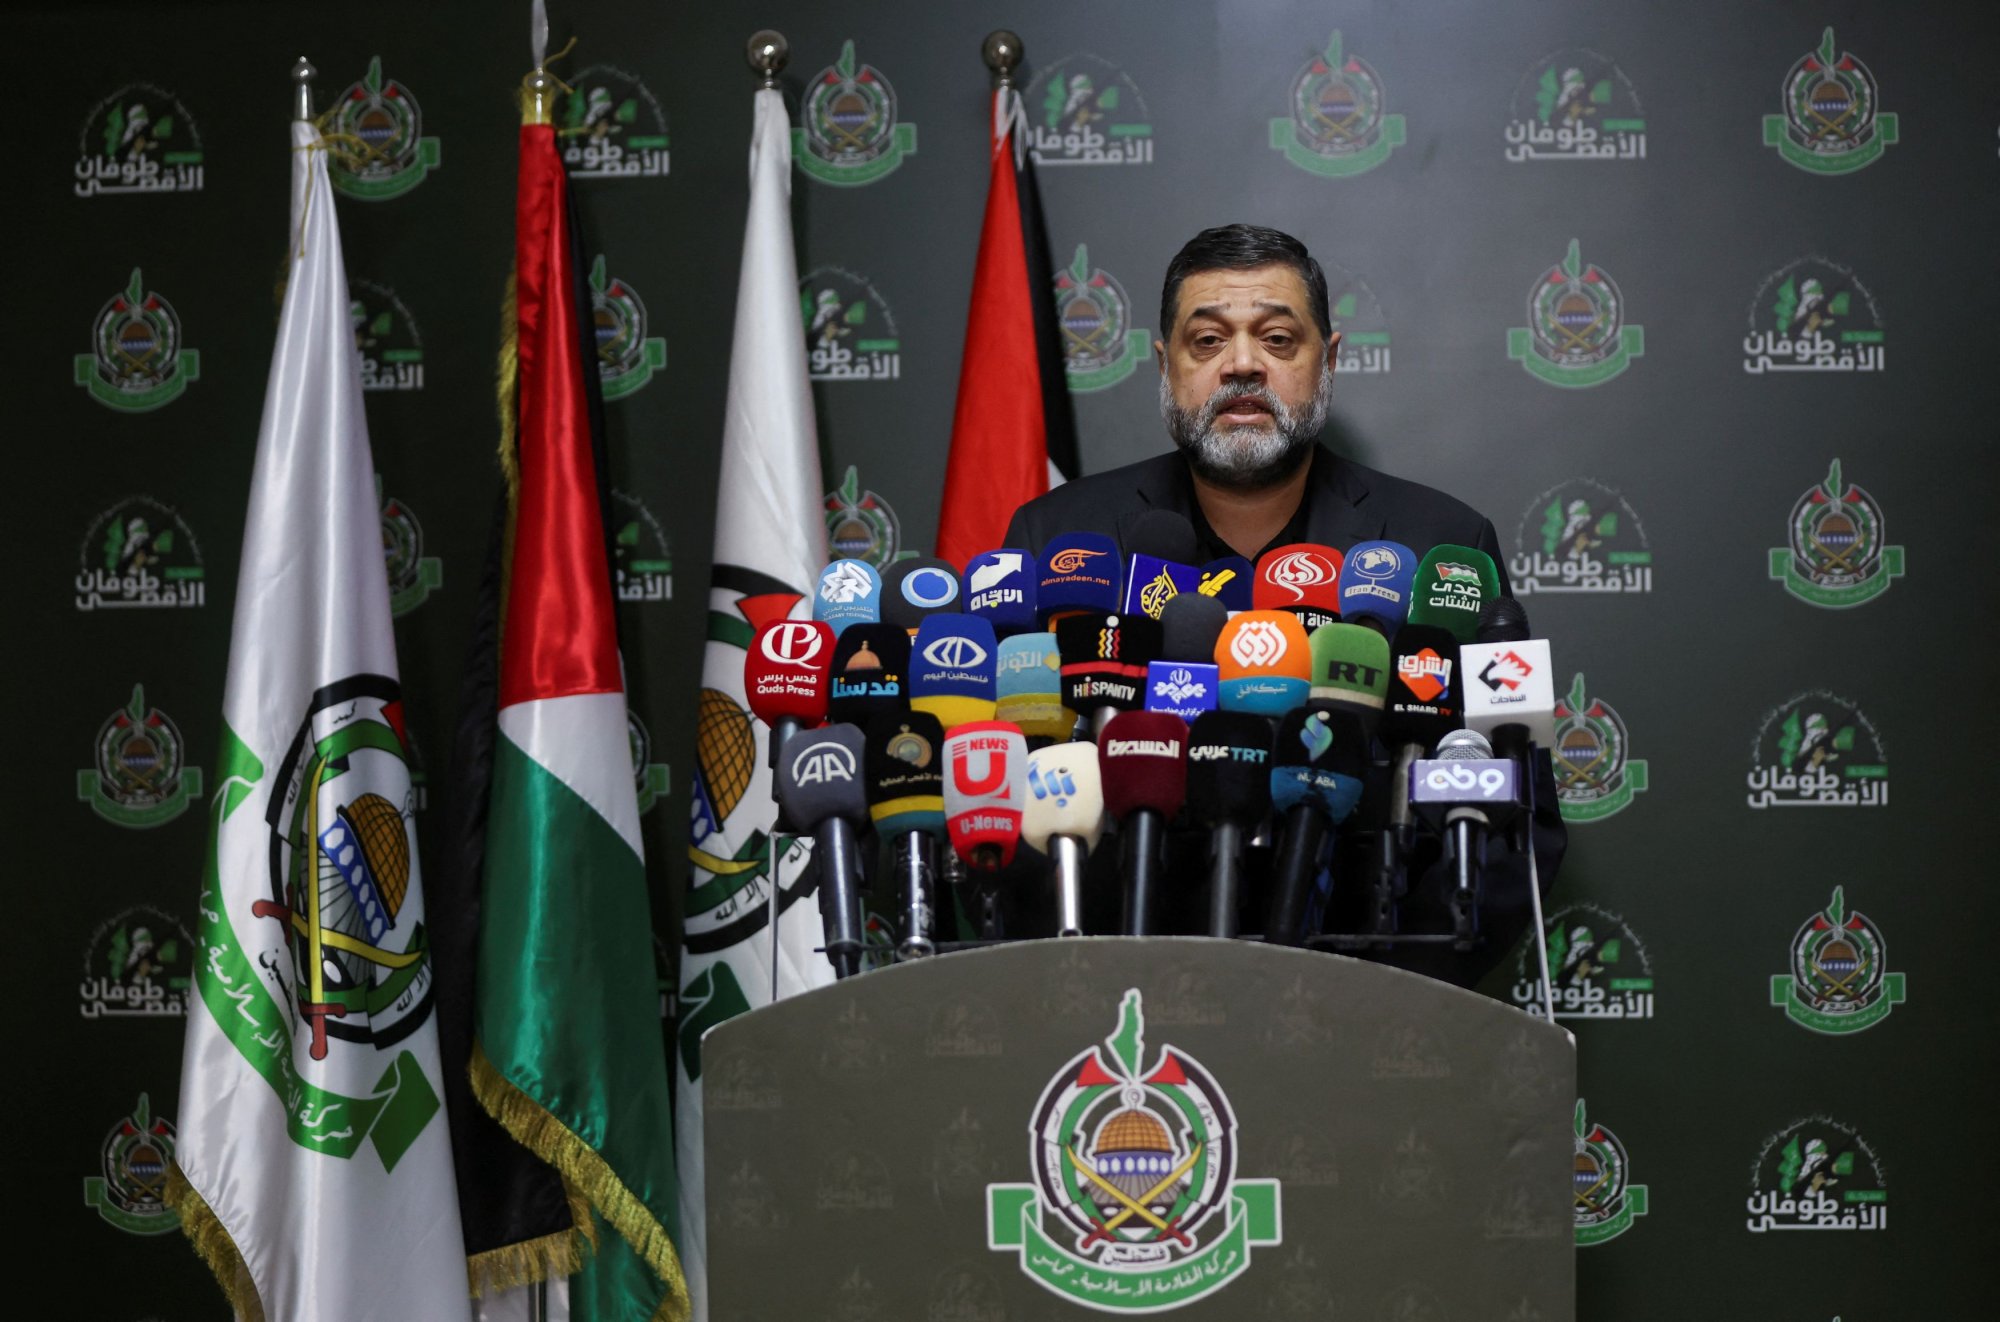 Χαμάς: Καμία πρόοδος στις συνομιλίες - Κατηγορεί το Ισραήλ για αδιαλλαξία